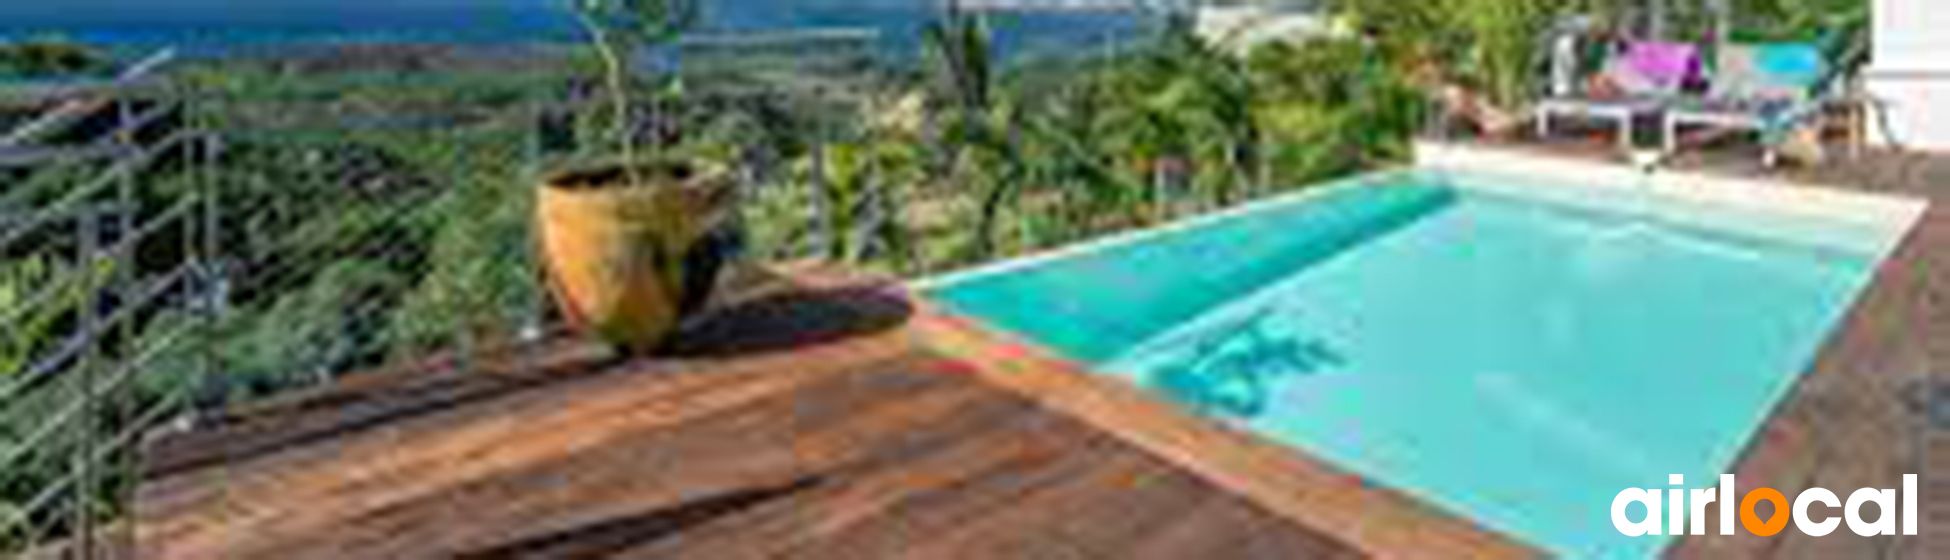 Location villa vacances martinique avec piscine